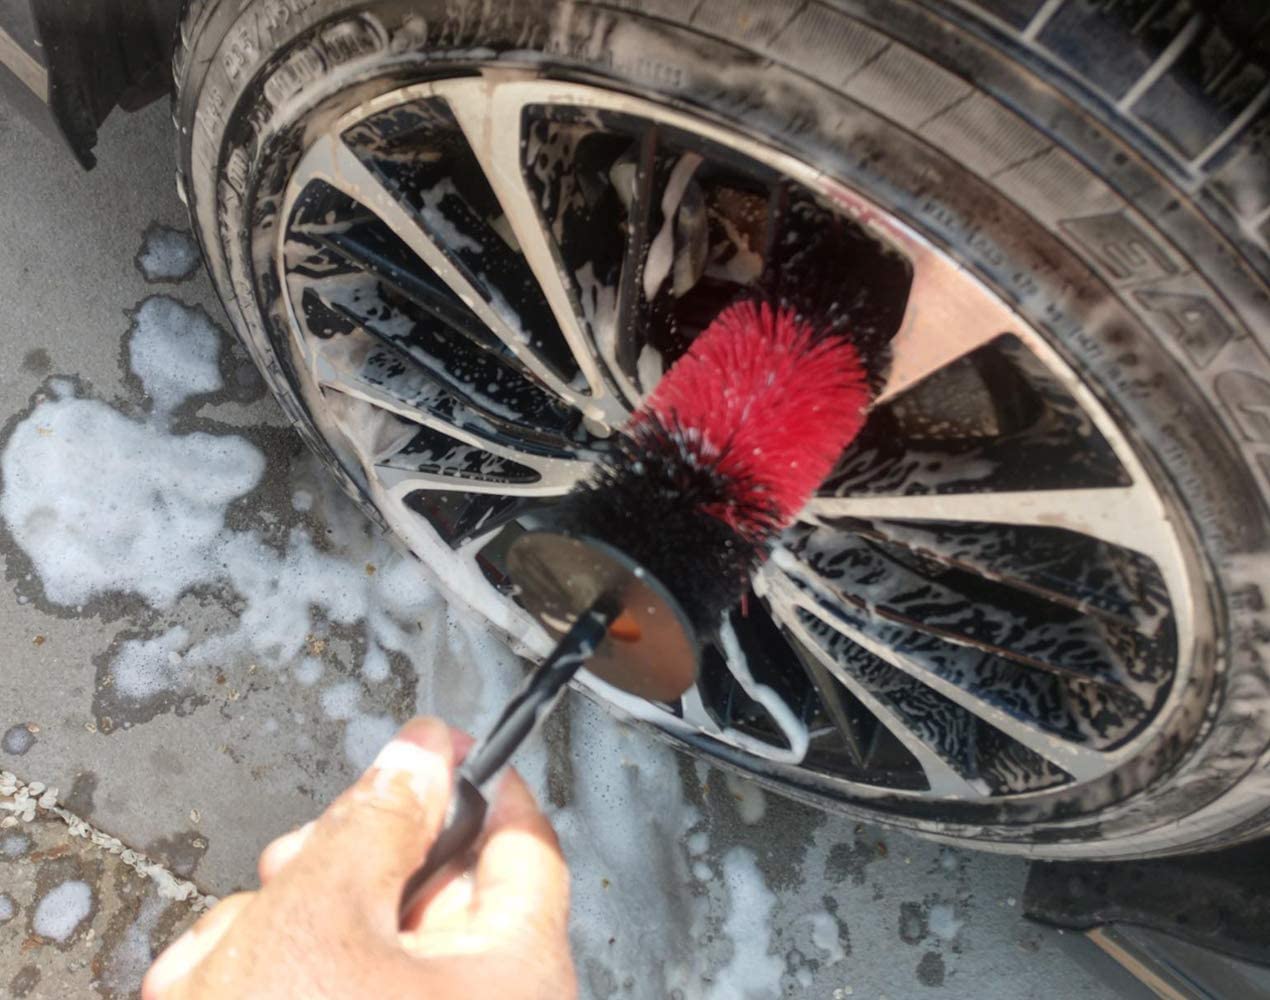 Buy Yesland 2 Pack Master Wheel Brush, 17 Inch Long Soft Bristle Wheel  Cleaning Brush Kit or Car Wheel Brush, Easy Reach Rim Tire Detailing Brush  for Wheels, Exhaust Tips, Rims &